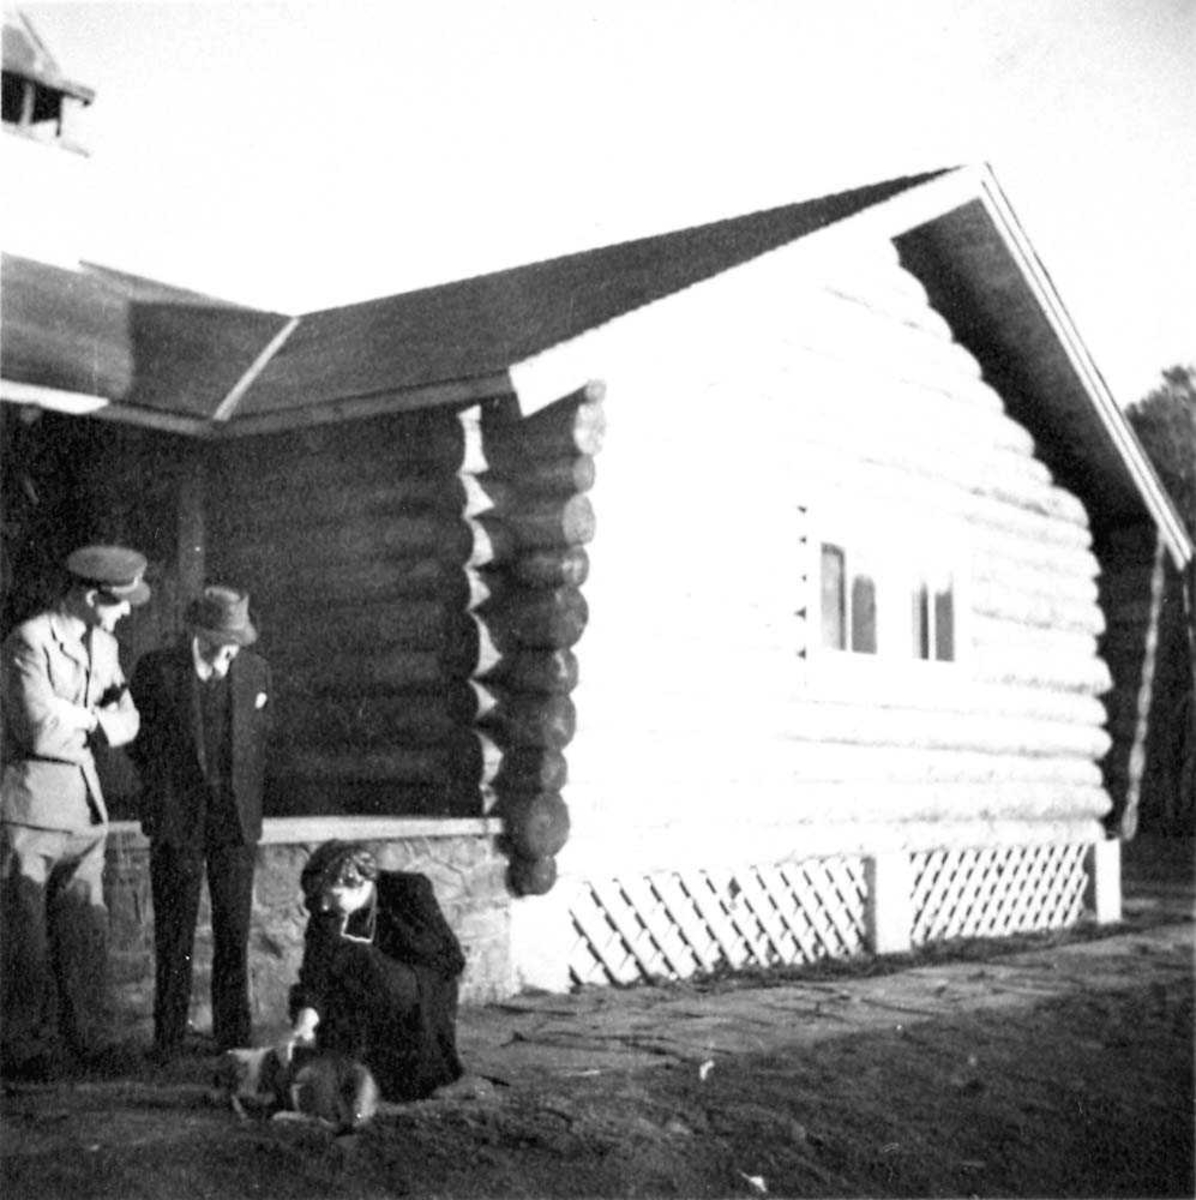 Portrett. Tre personer, to menn og en kvinne foran en bygning. Kvinnen klapper en hund.